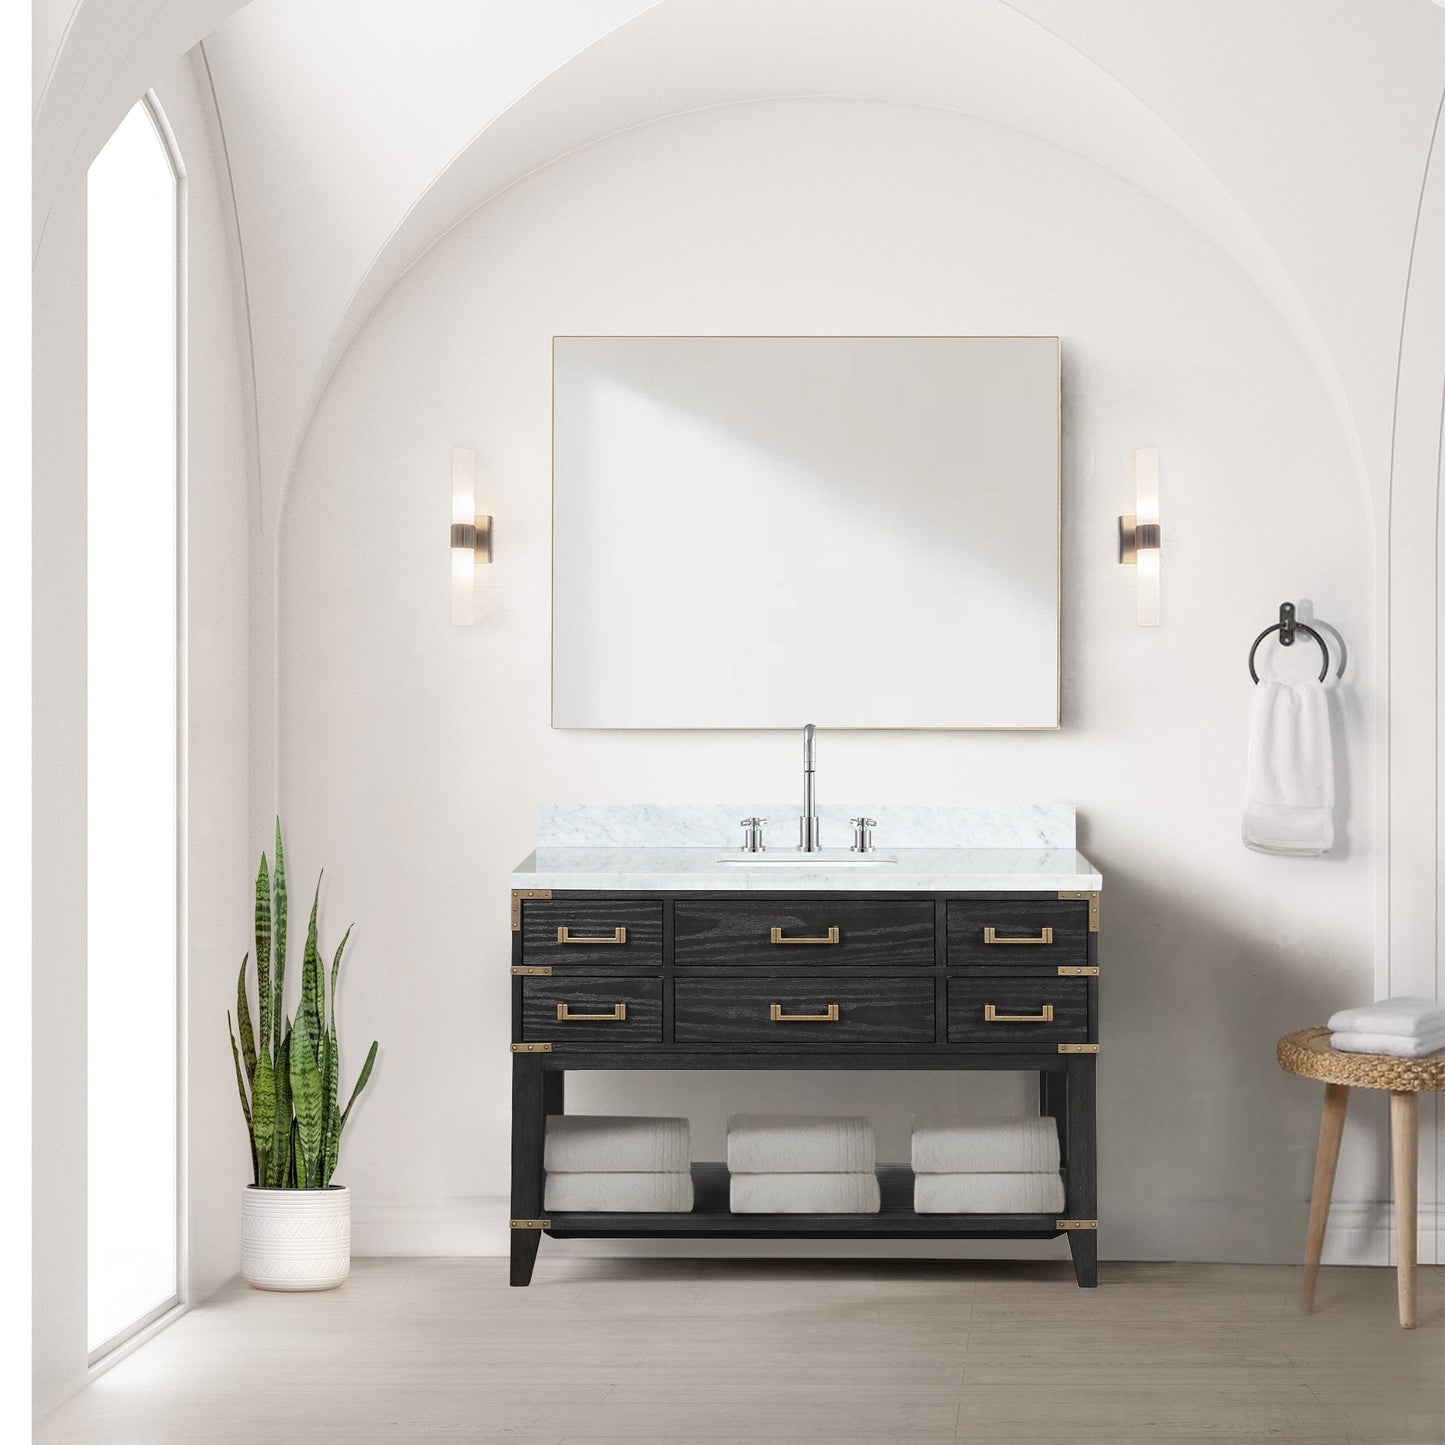 Lexora Bathroom Vanity Norwalk 48" x 22" Single Bath Vanity